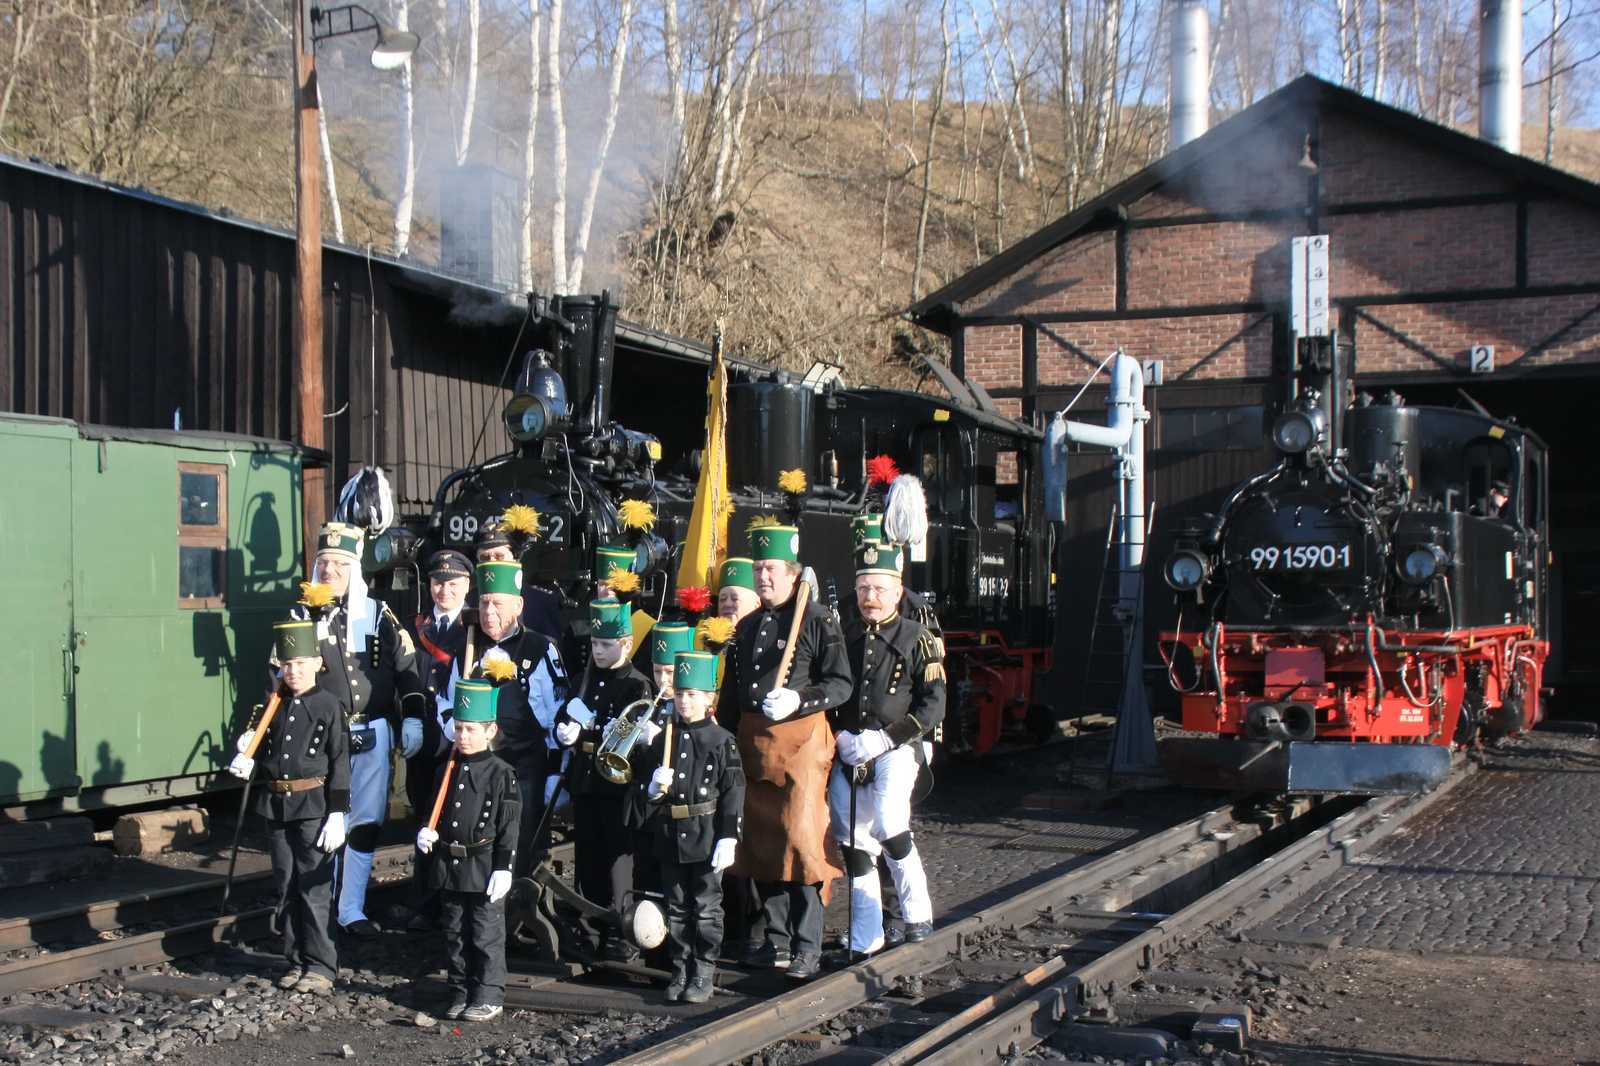 Fotoshooting am Karfreitagmorgen - mit Bergbrüderschaft und -musikanten vor Eisenbahnkulisse.